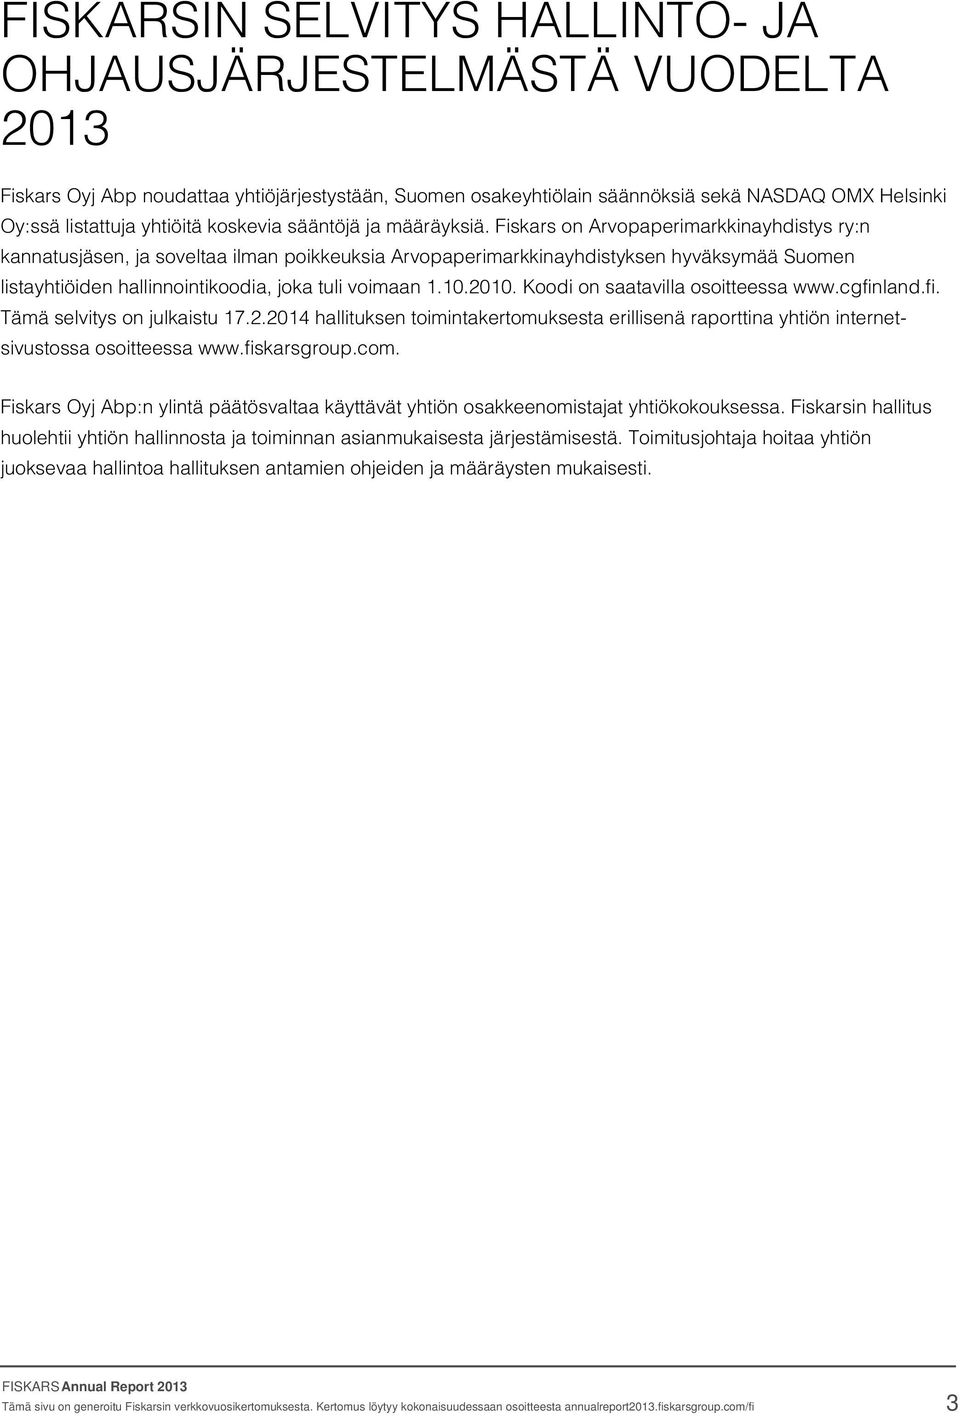 Fiskars on Arvopaperimarkkinayhdistys ry:n kannatusjäsen, ja soveltaa ilman poikkeuksia Arvopaperimarkkinayhdistyksen hyväksymää Suomen listayhtiöiden hallinnointikoodia, joka tuli voimaan 1.10.2010.